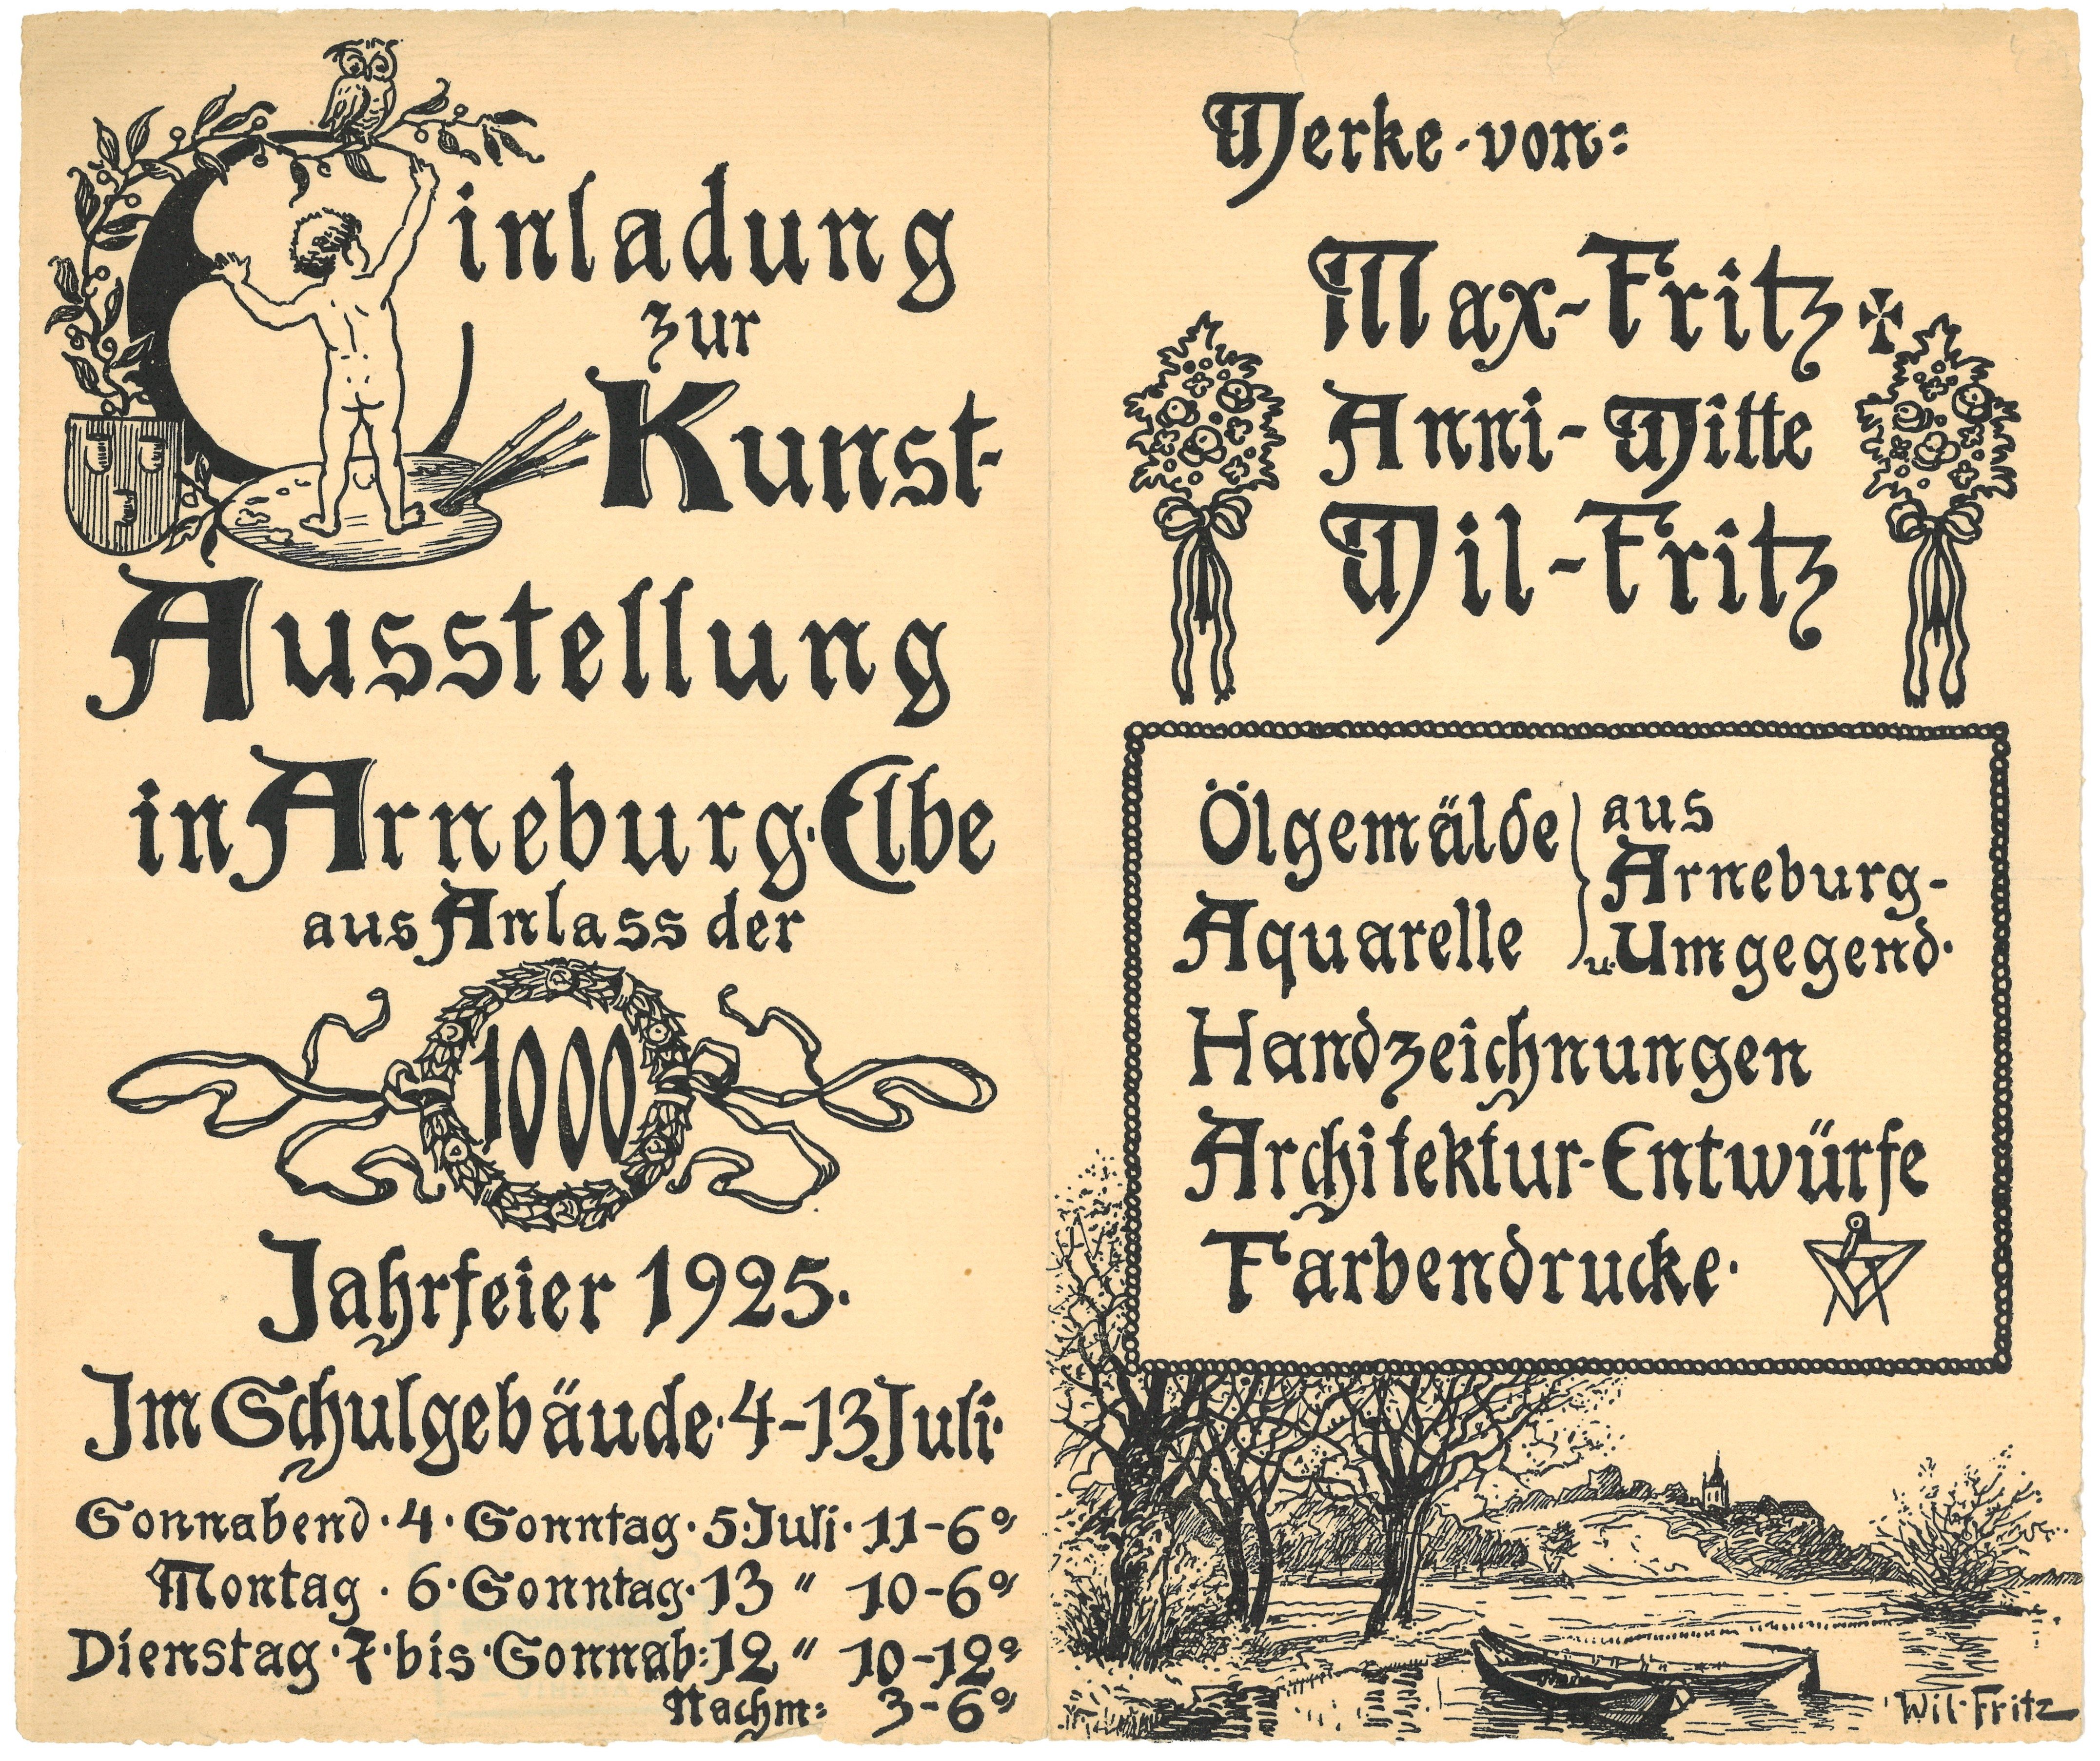 Einladung zur Kunstausstellung in Arneburg/Elbe 1925 (Landesgeschichtliche Vereinigung für die Mark Brandenburg e.V., Archiv CC BY)